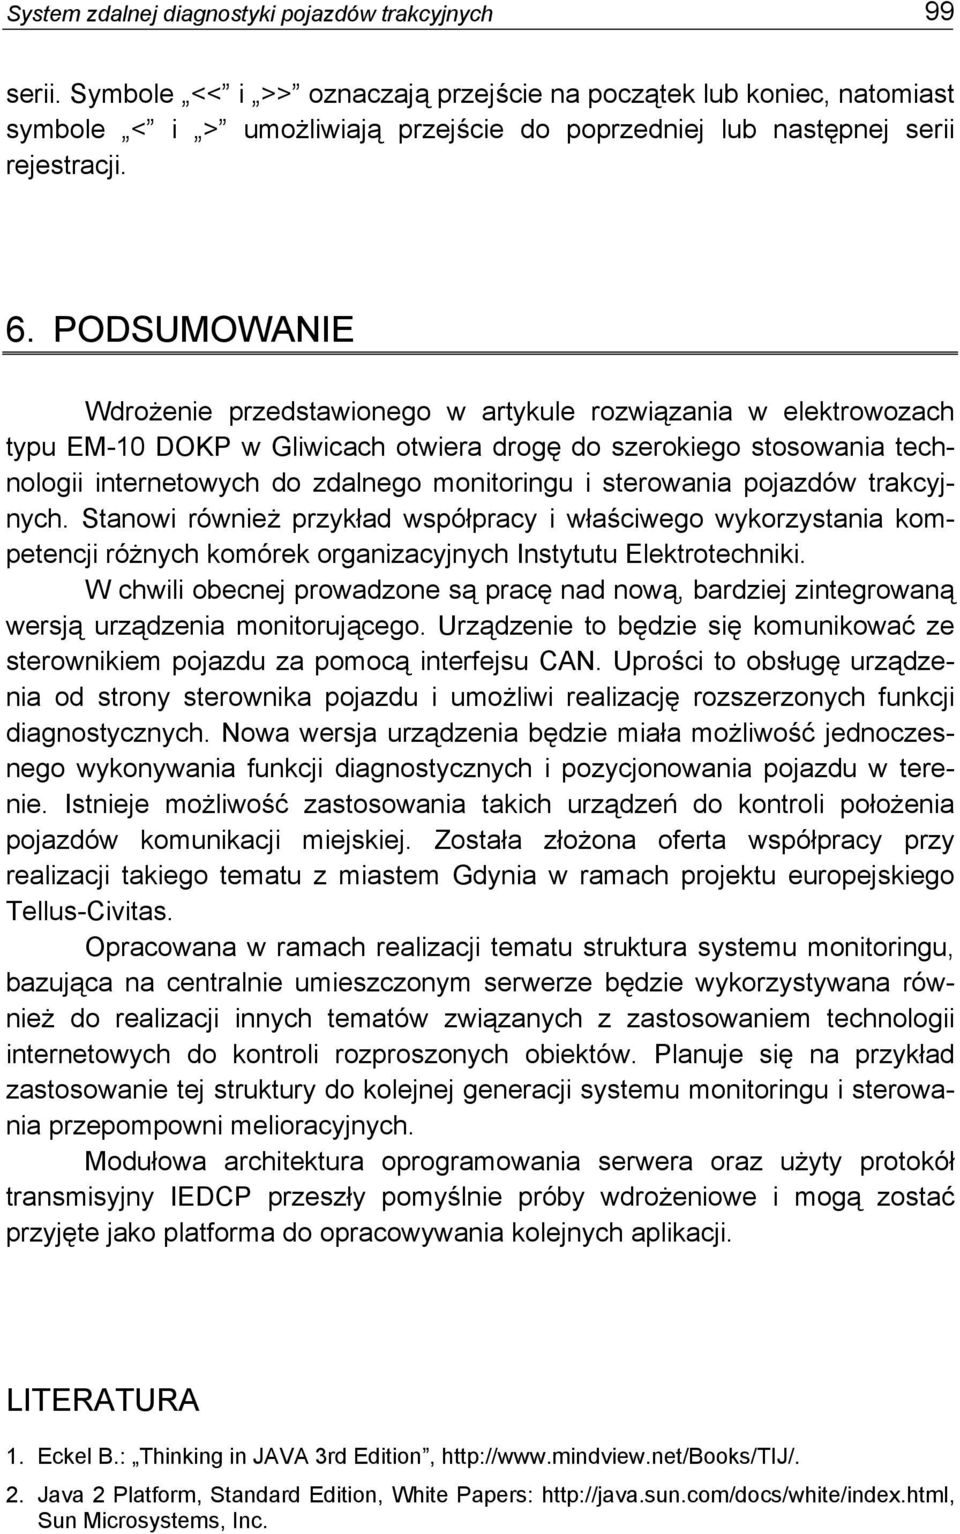 PODSUMOWANIE Wdrożenie przedstawionego w artykule rozwiązania w elektrowozach typu EM-10 DOKP w Gliwicach otwiera drogę do szerokiego stosowania technologii internetowych do zdalnego monitoringu i